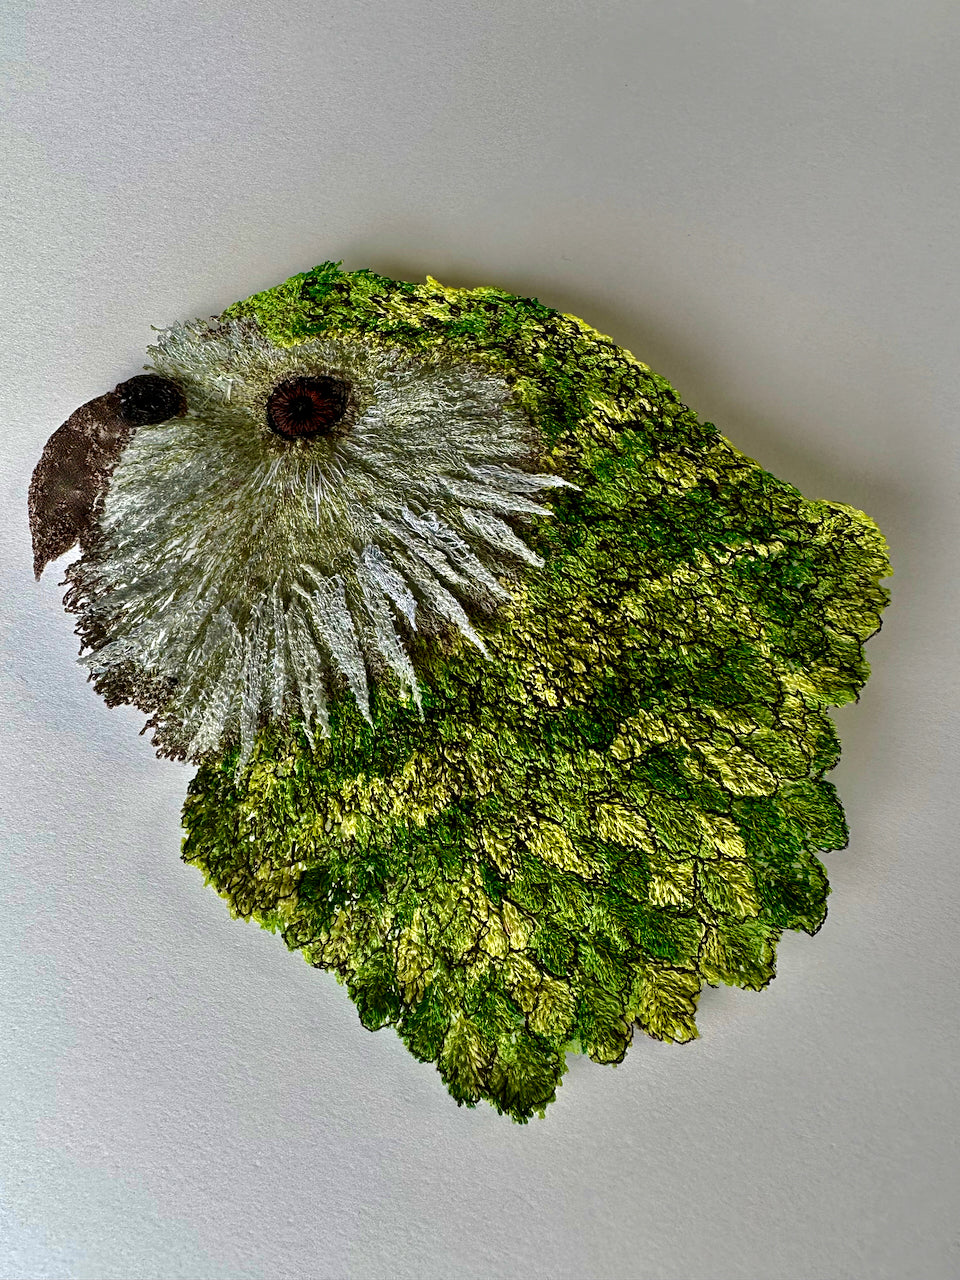 Kakapo sculptural embroidery